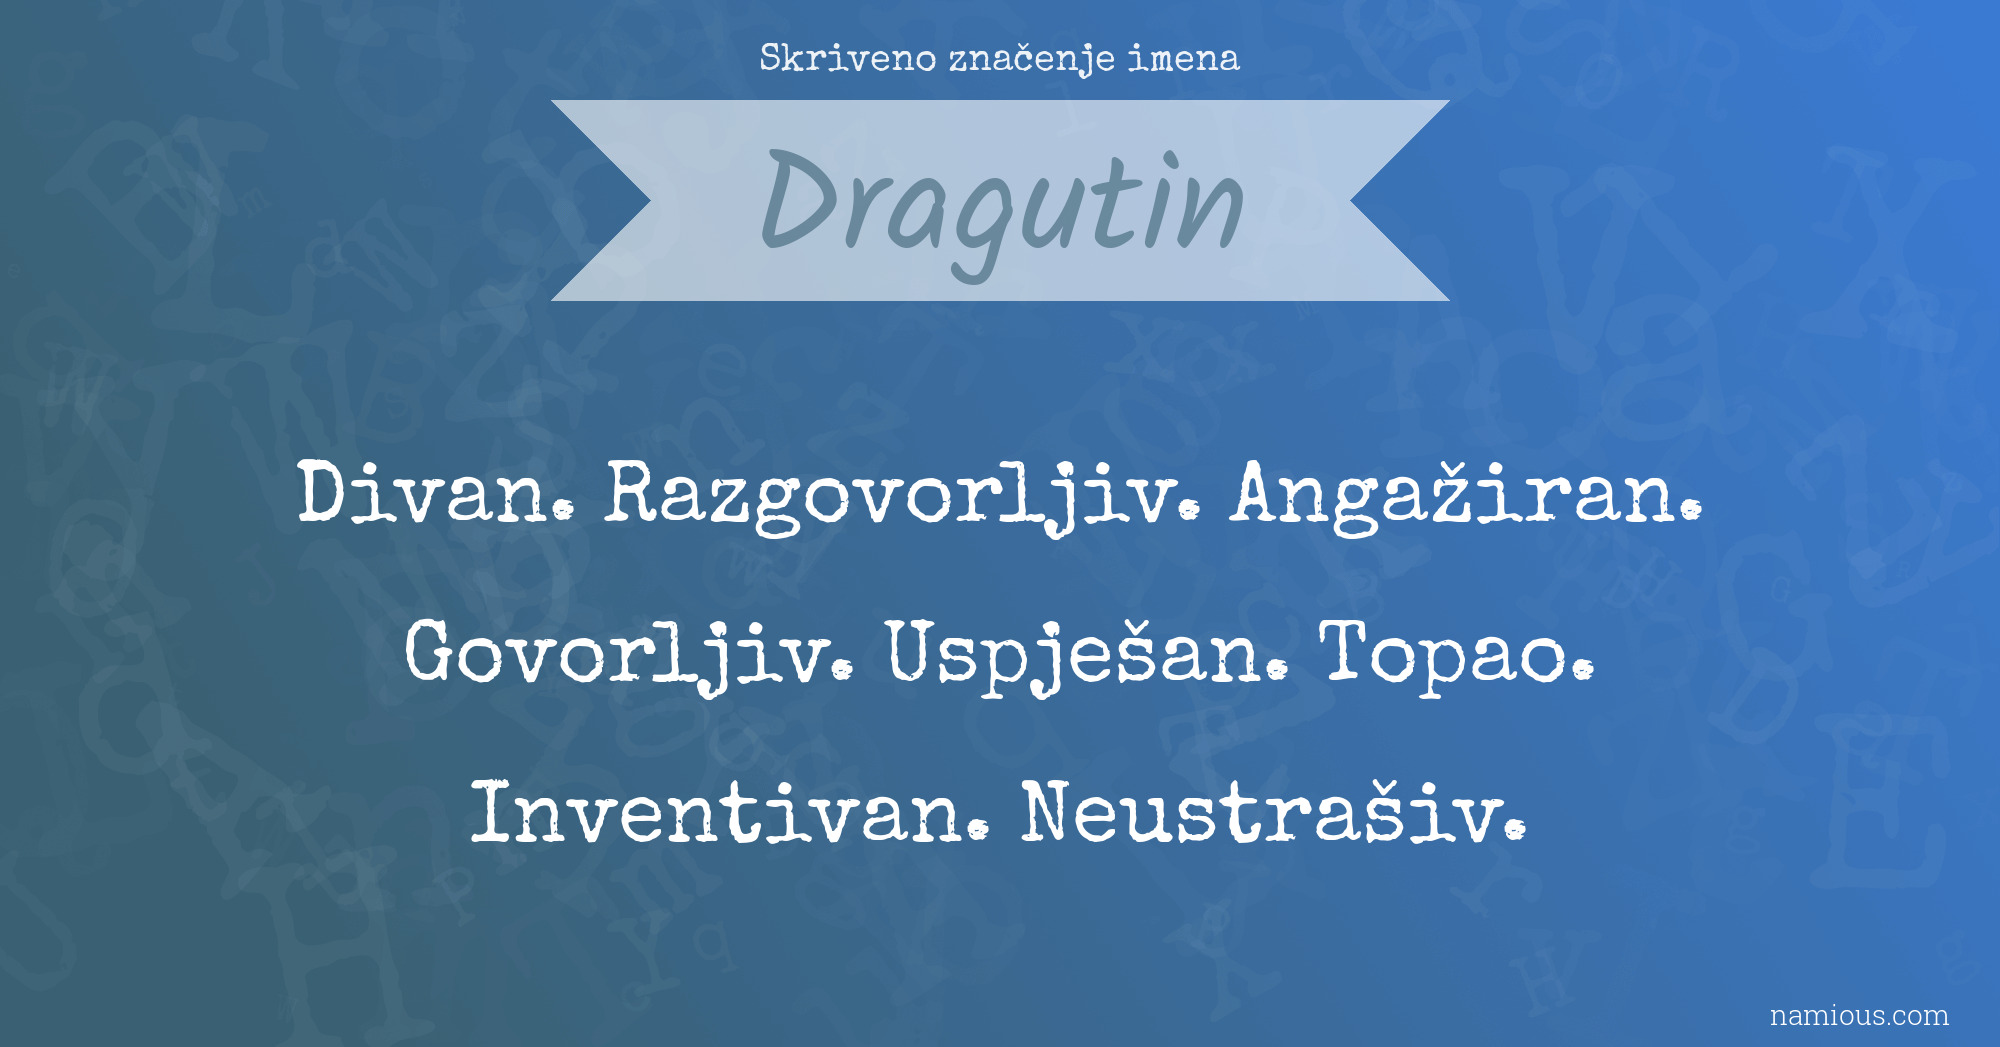 Skriveno značenje imena Dragutin